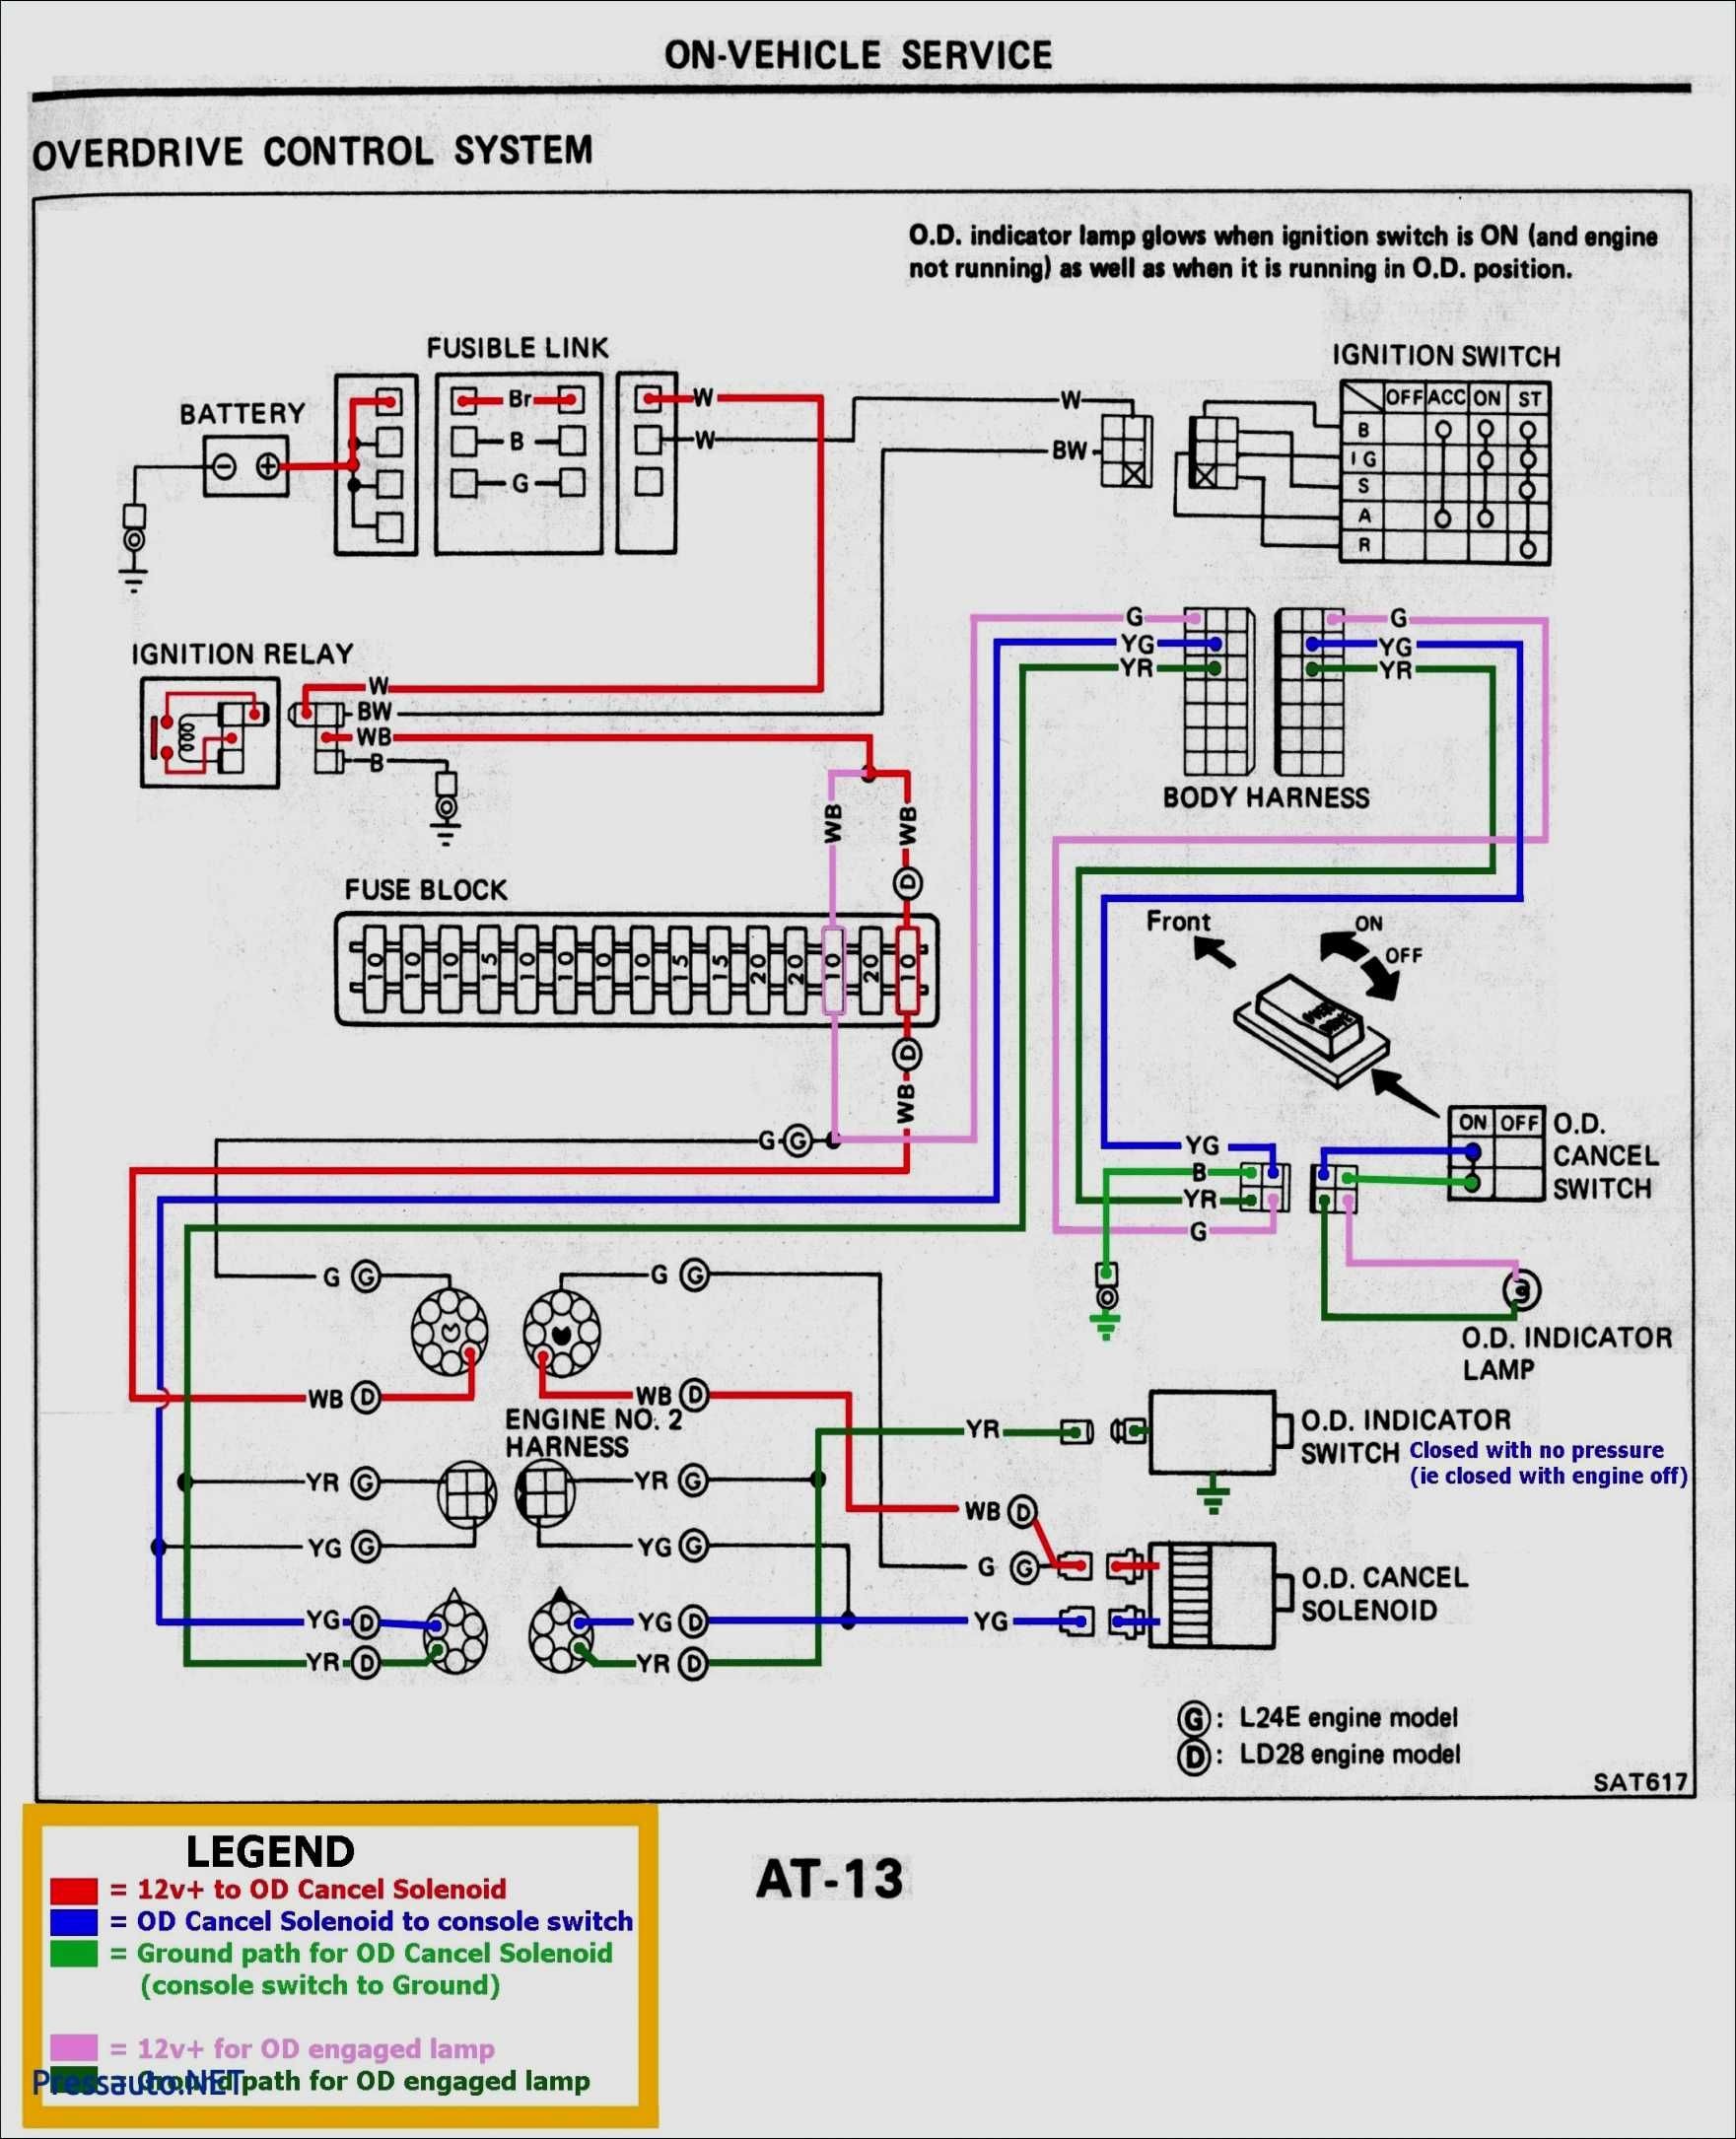 2002 Honda Civic Wiring Schematics 15 Simple Wiring Diagram for 220 Volt Baseboard Heater Of 2002 Honda Civic Wiring Schematics